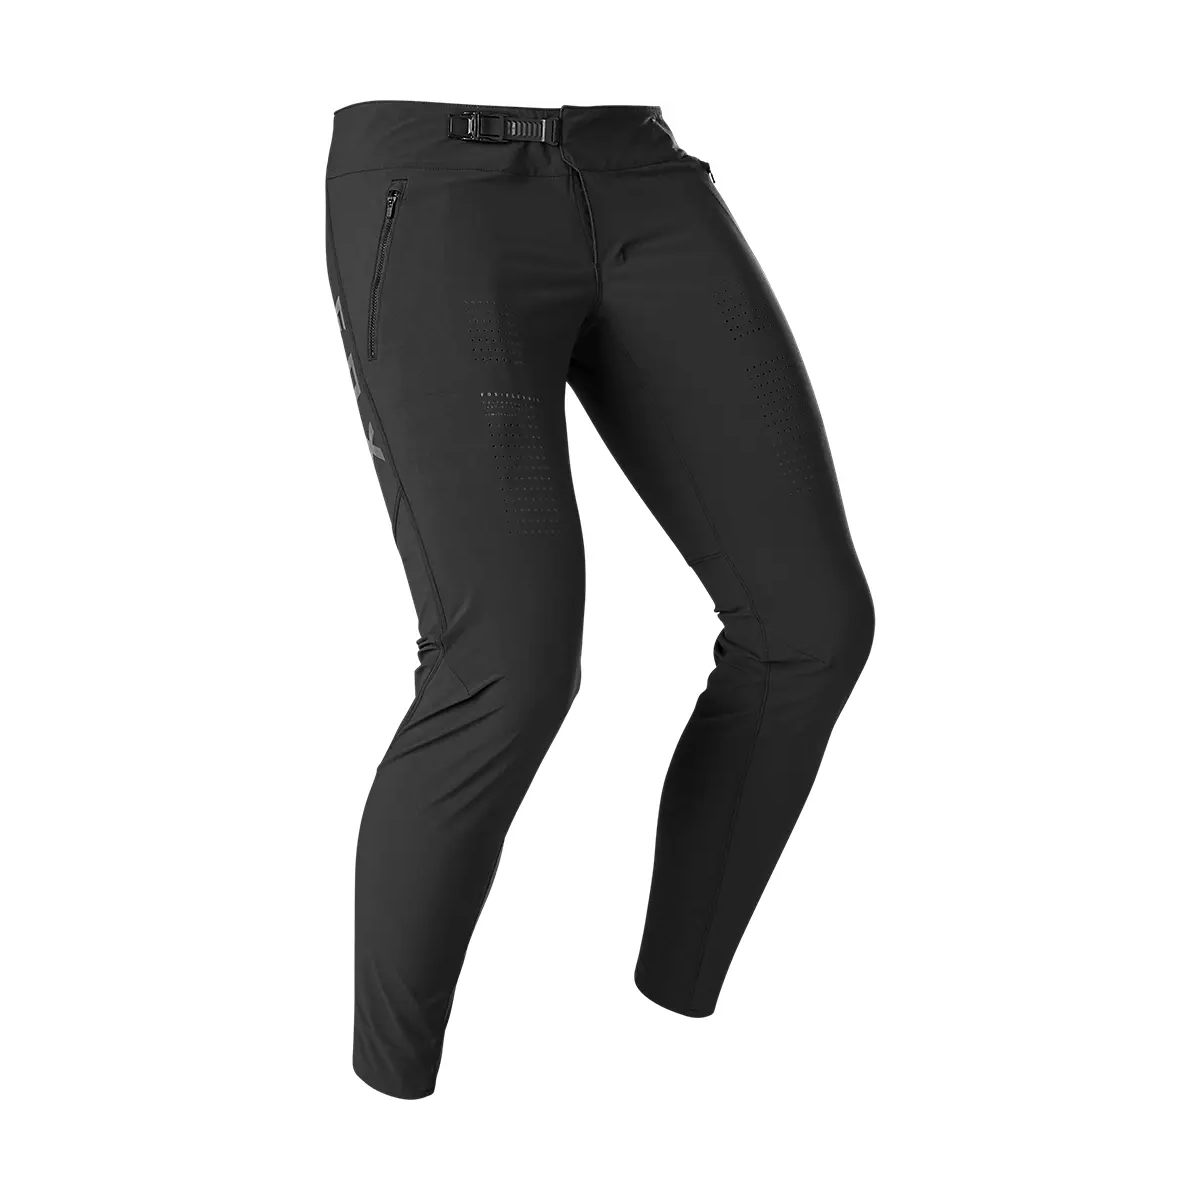 Pantalón largo Enduro/DH Fox Flexair color negro